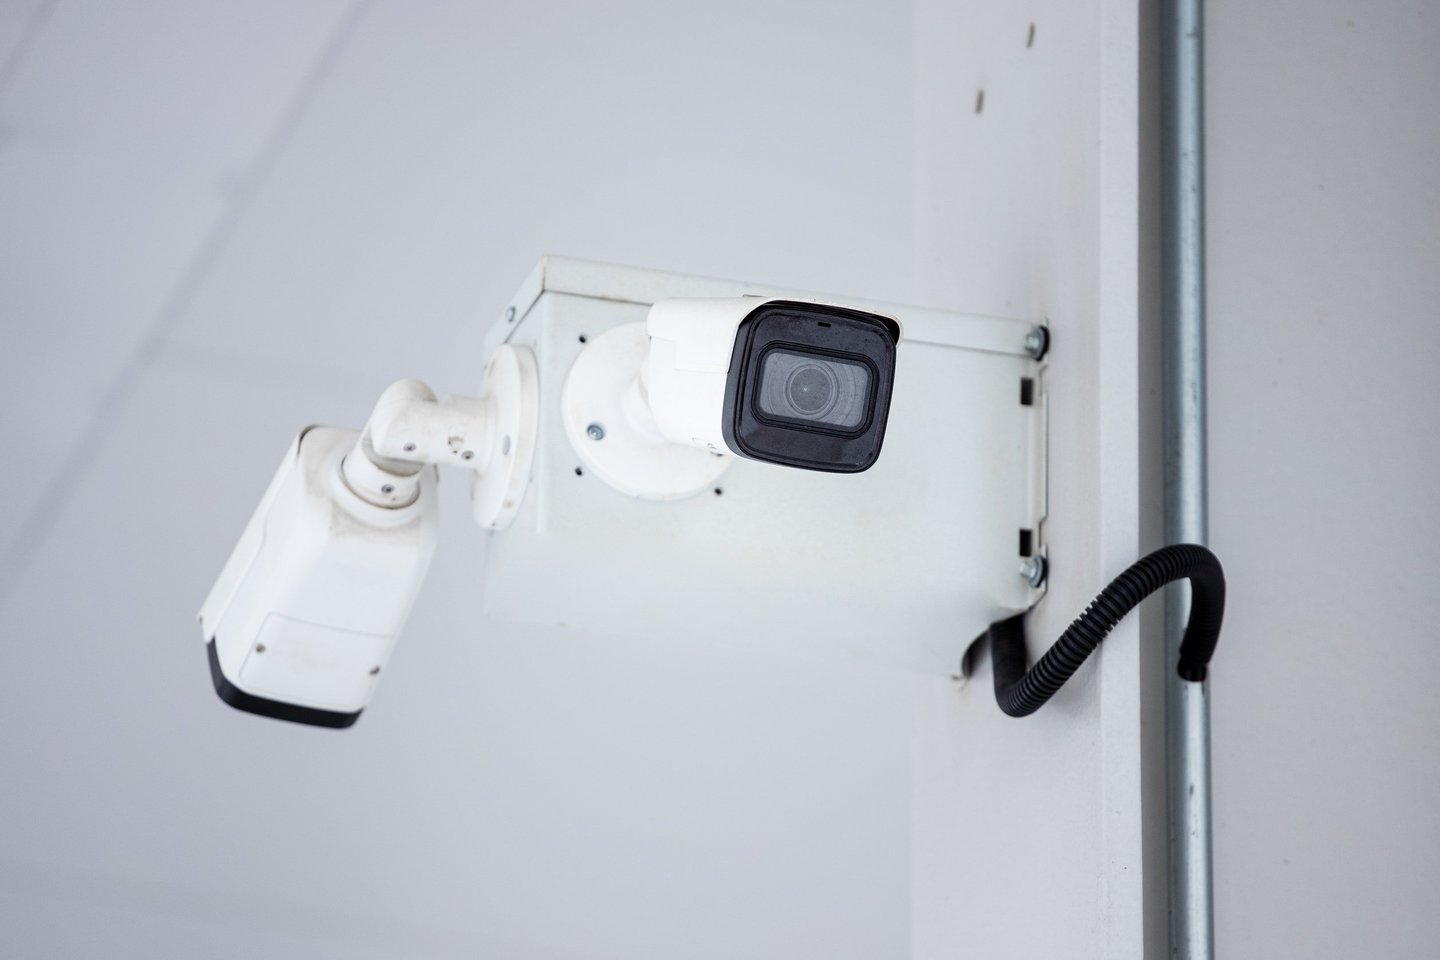  Išmanios kameros veiksmingai saugo namus, kai esate darbe arba išvykę atostogų.<br> Pexels nuotr.